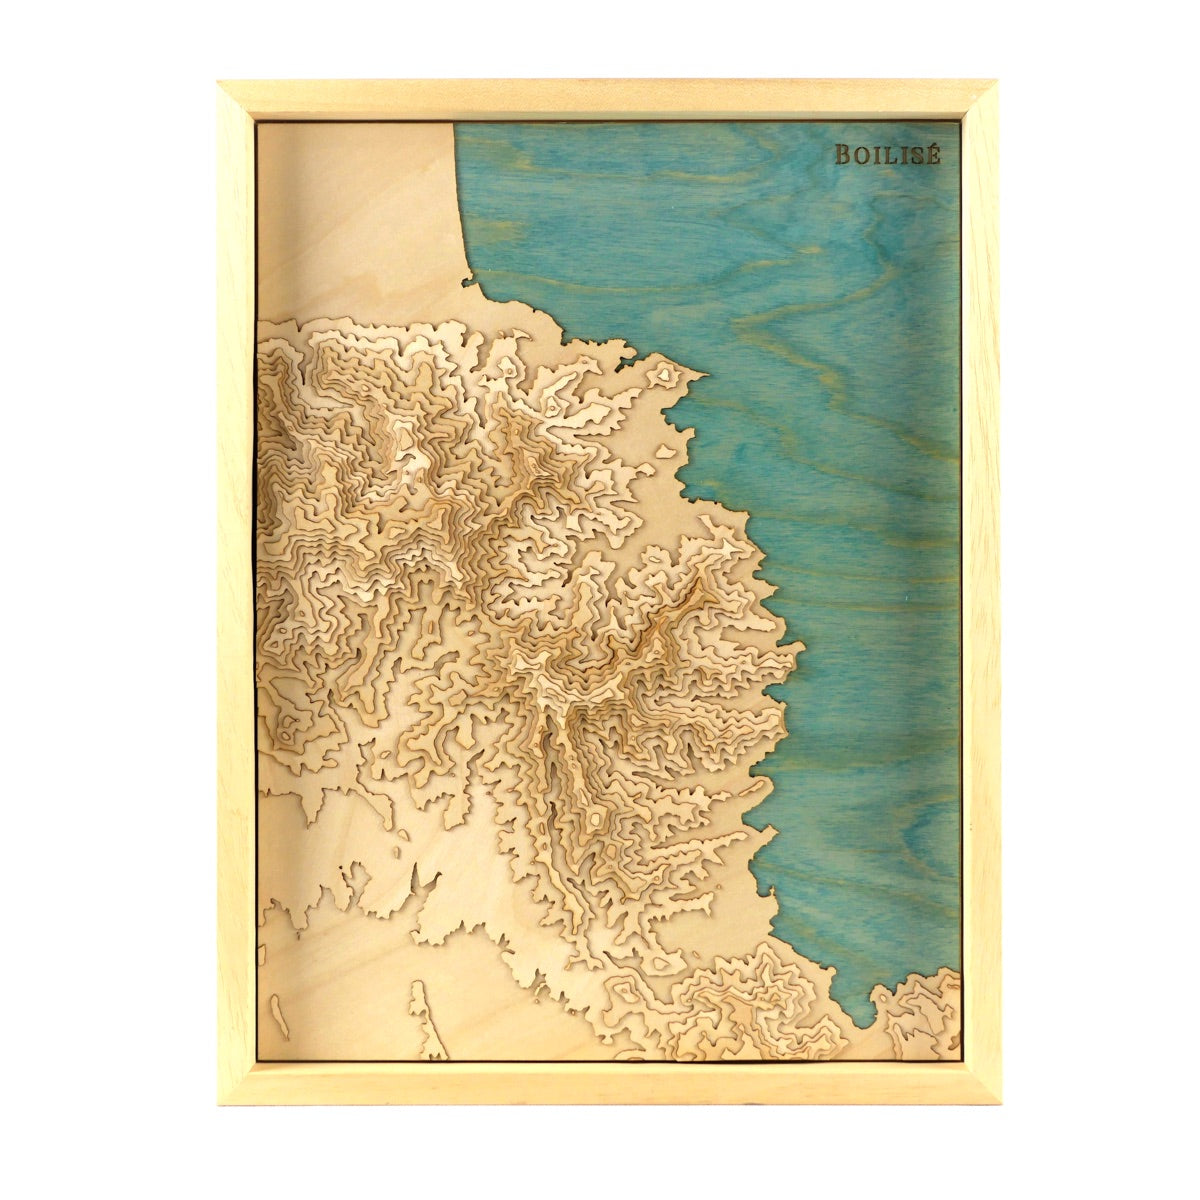 Carte de la côte vermeille en relief et en bois dans un cadre brut avec la méditérannée en turquoise